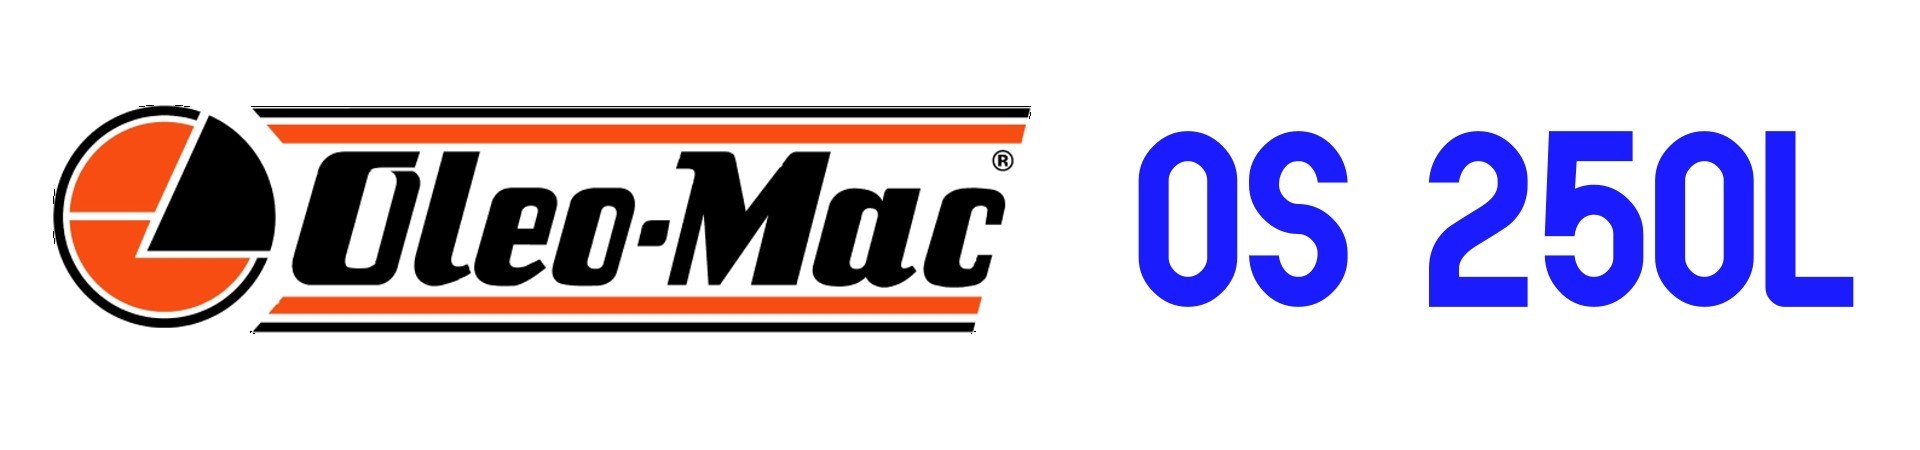 RECAMBIOS Vareador Oleo Mac OS250L al Mejor PRECIO